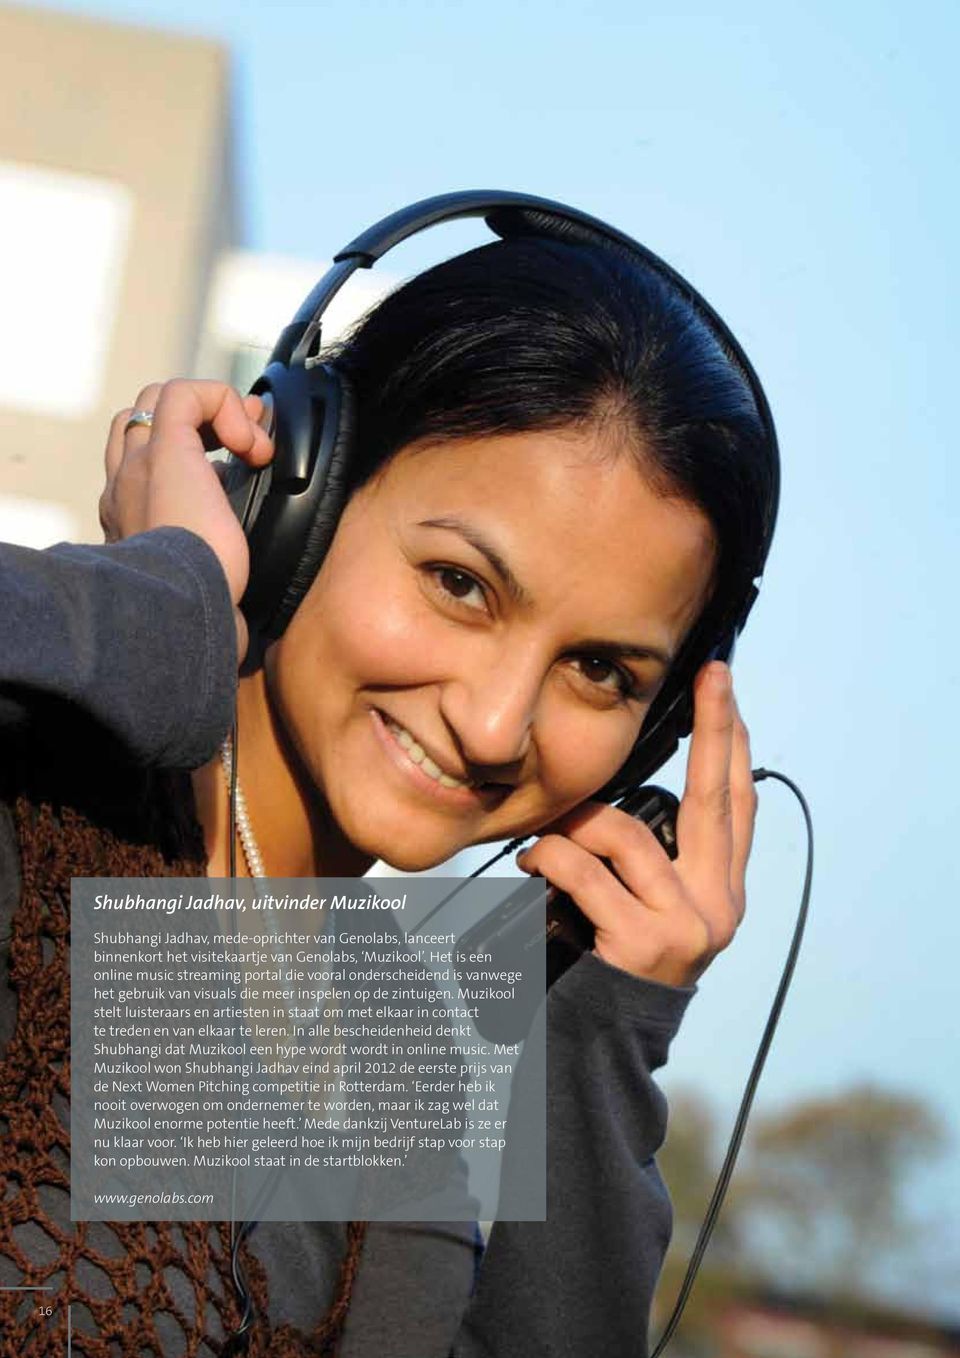 Muzikool stelt luisteraars en artiesten in staat om met elkaar in contact te treden en van elkaar te leren. In alle bescheidenheid denkt Shubhangi dat Muzikool een hype wordt wordt in online music.